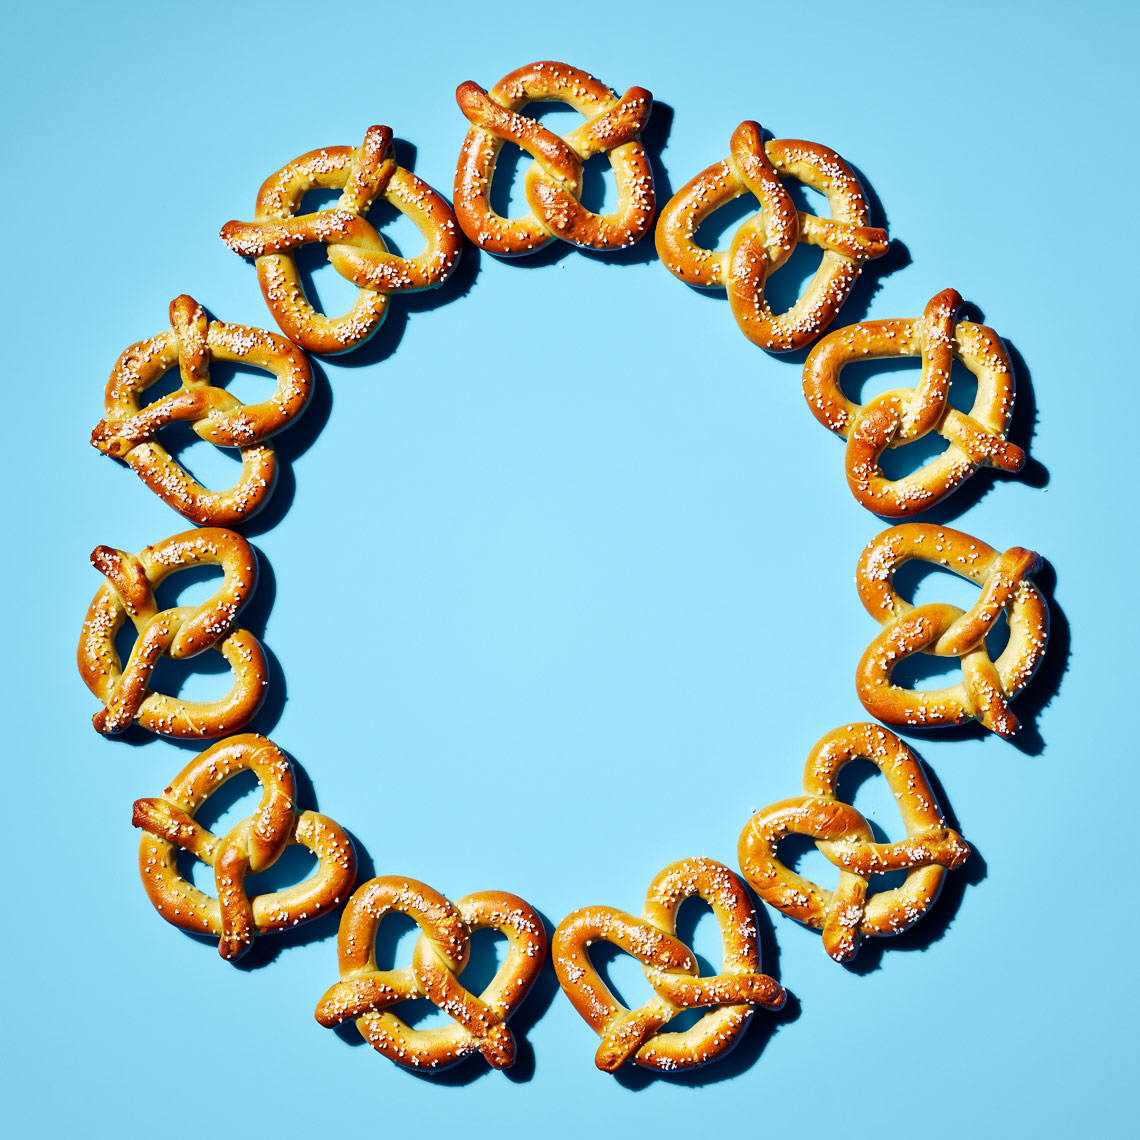 snack_awards_pretzels_v2_blue_web